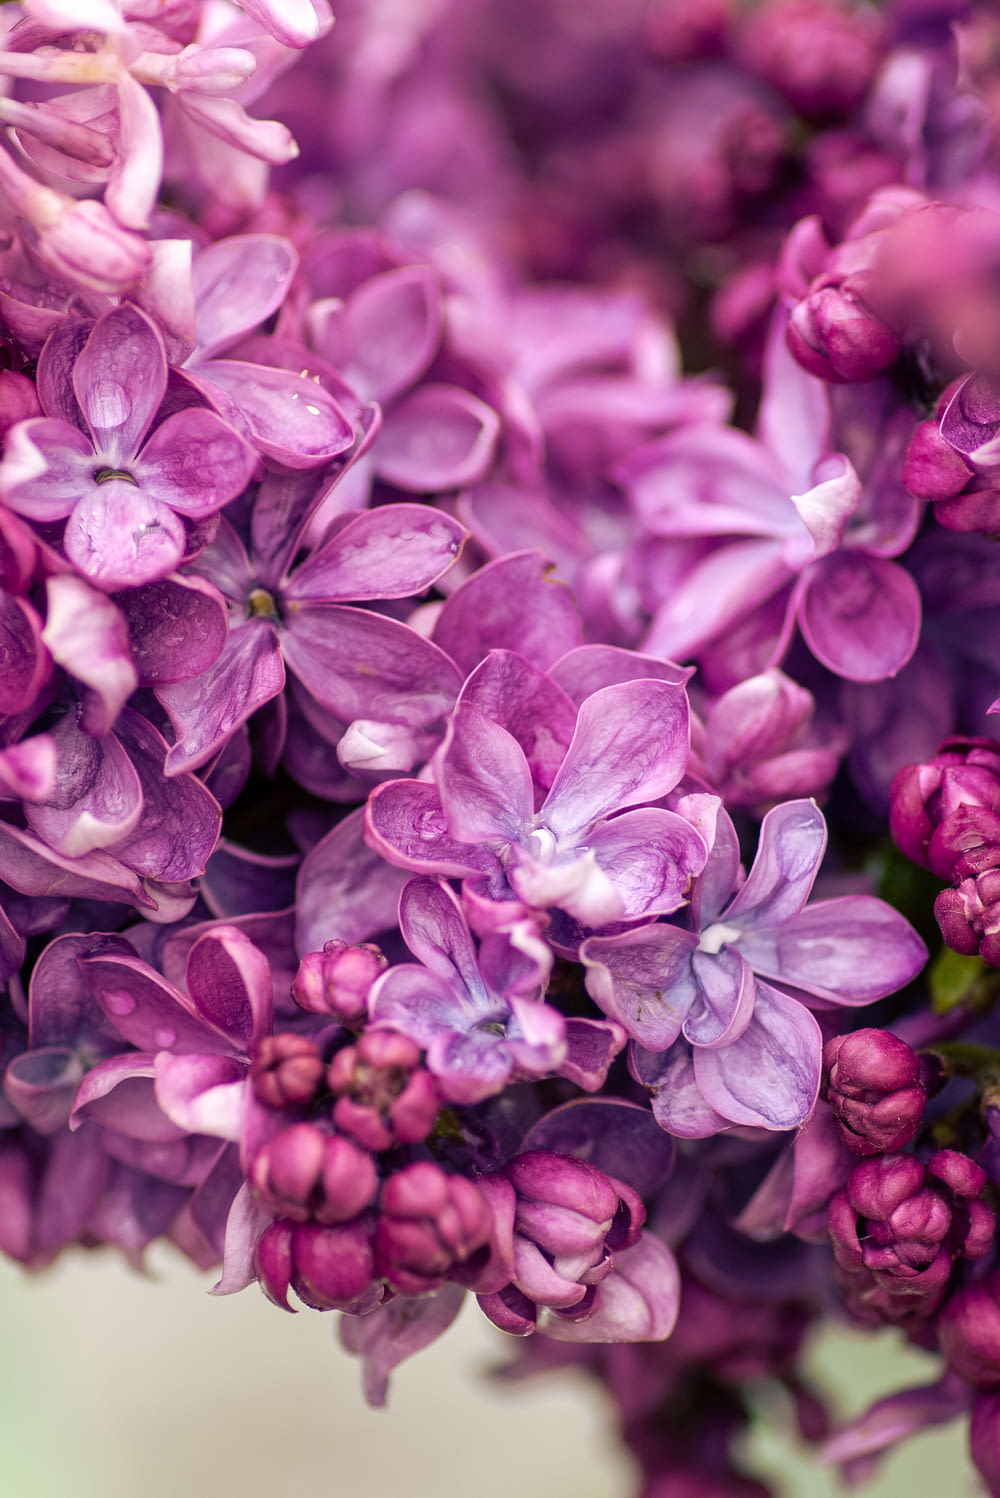 purple flowers in macro lens